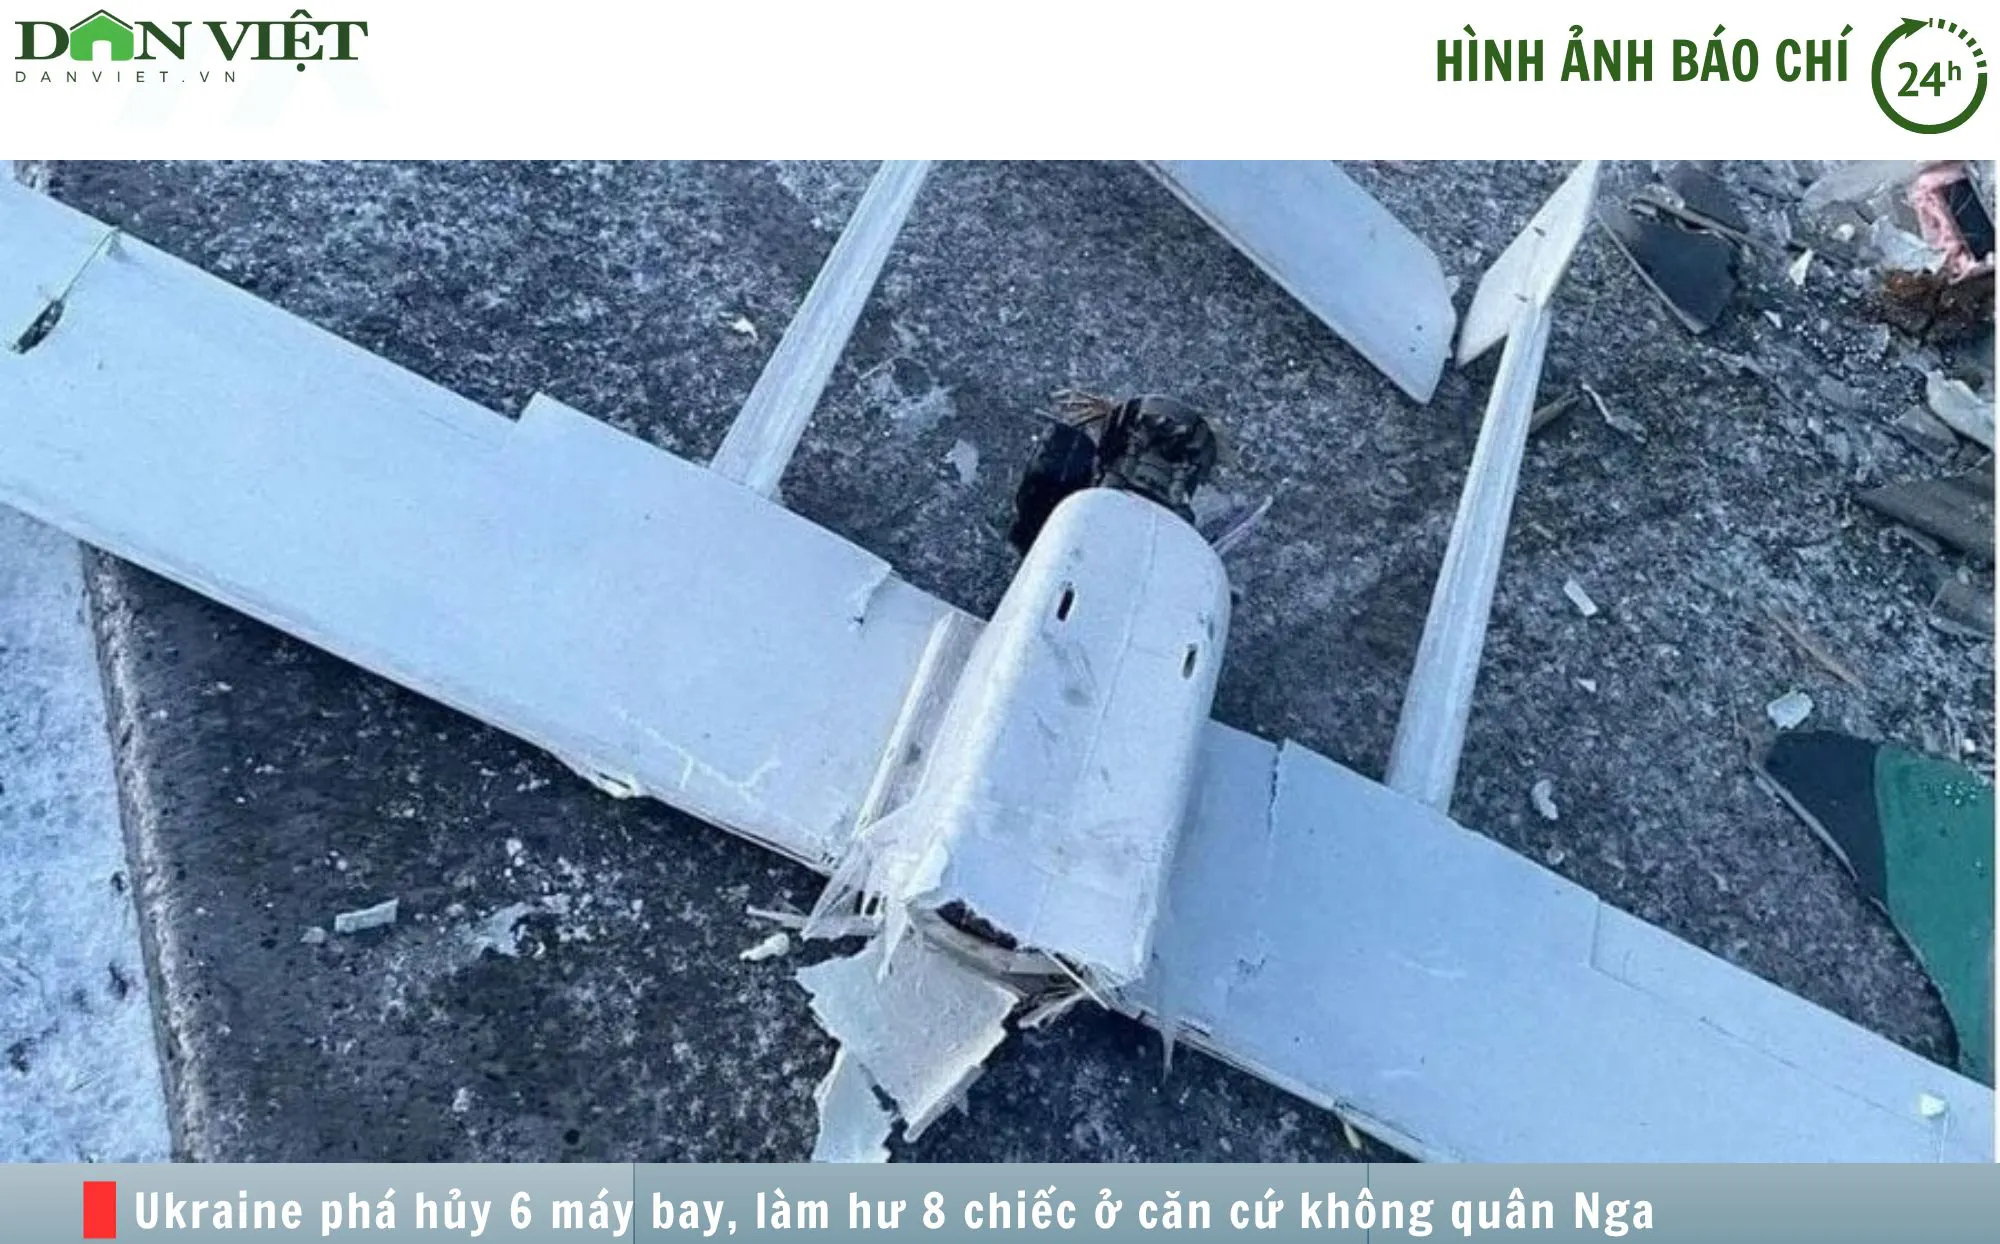 Hình ảnh báo chí 24h: An ninh Ukraine phá hủy hàng loạt máy bay tại căn cứ không quân Nga- Ảnh 1.